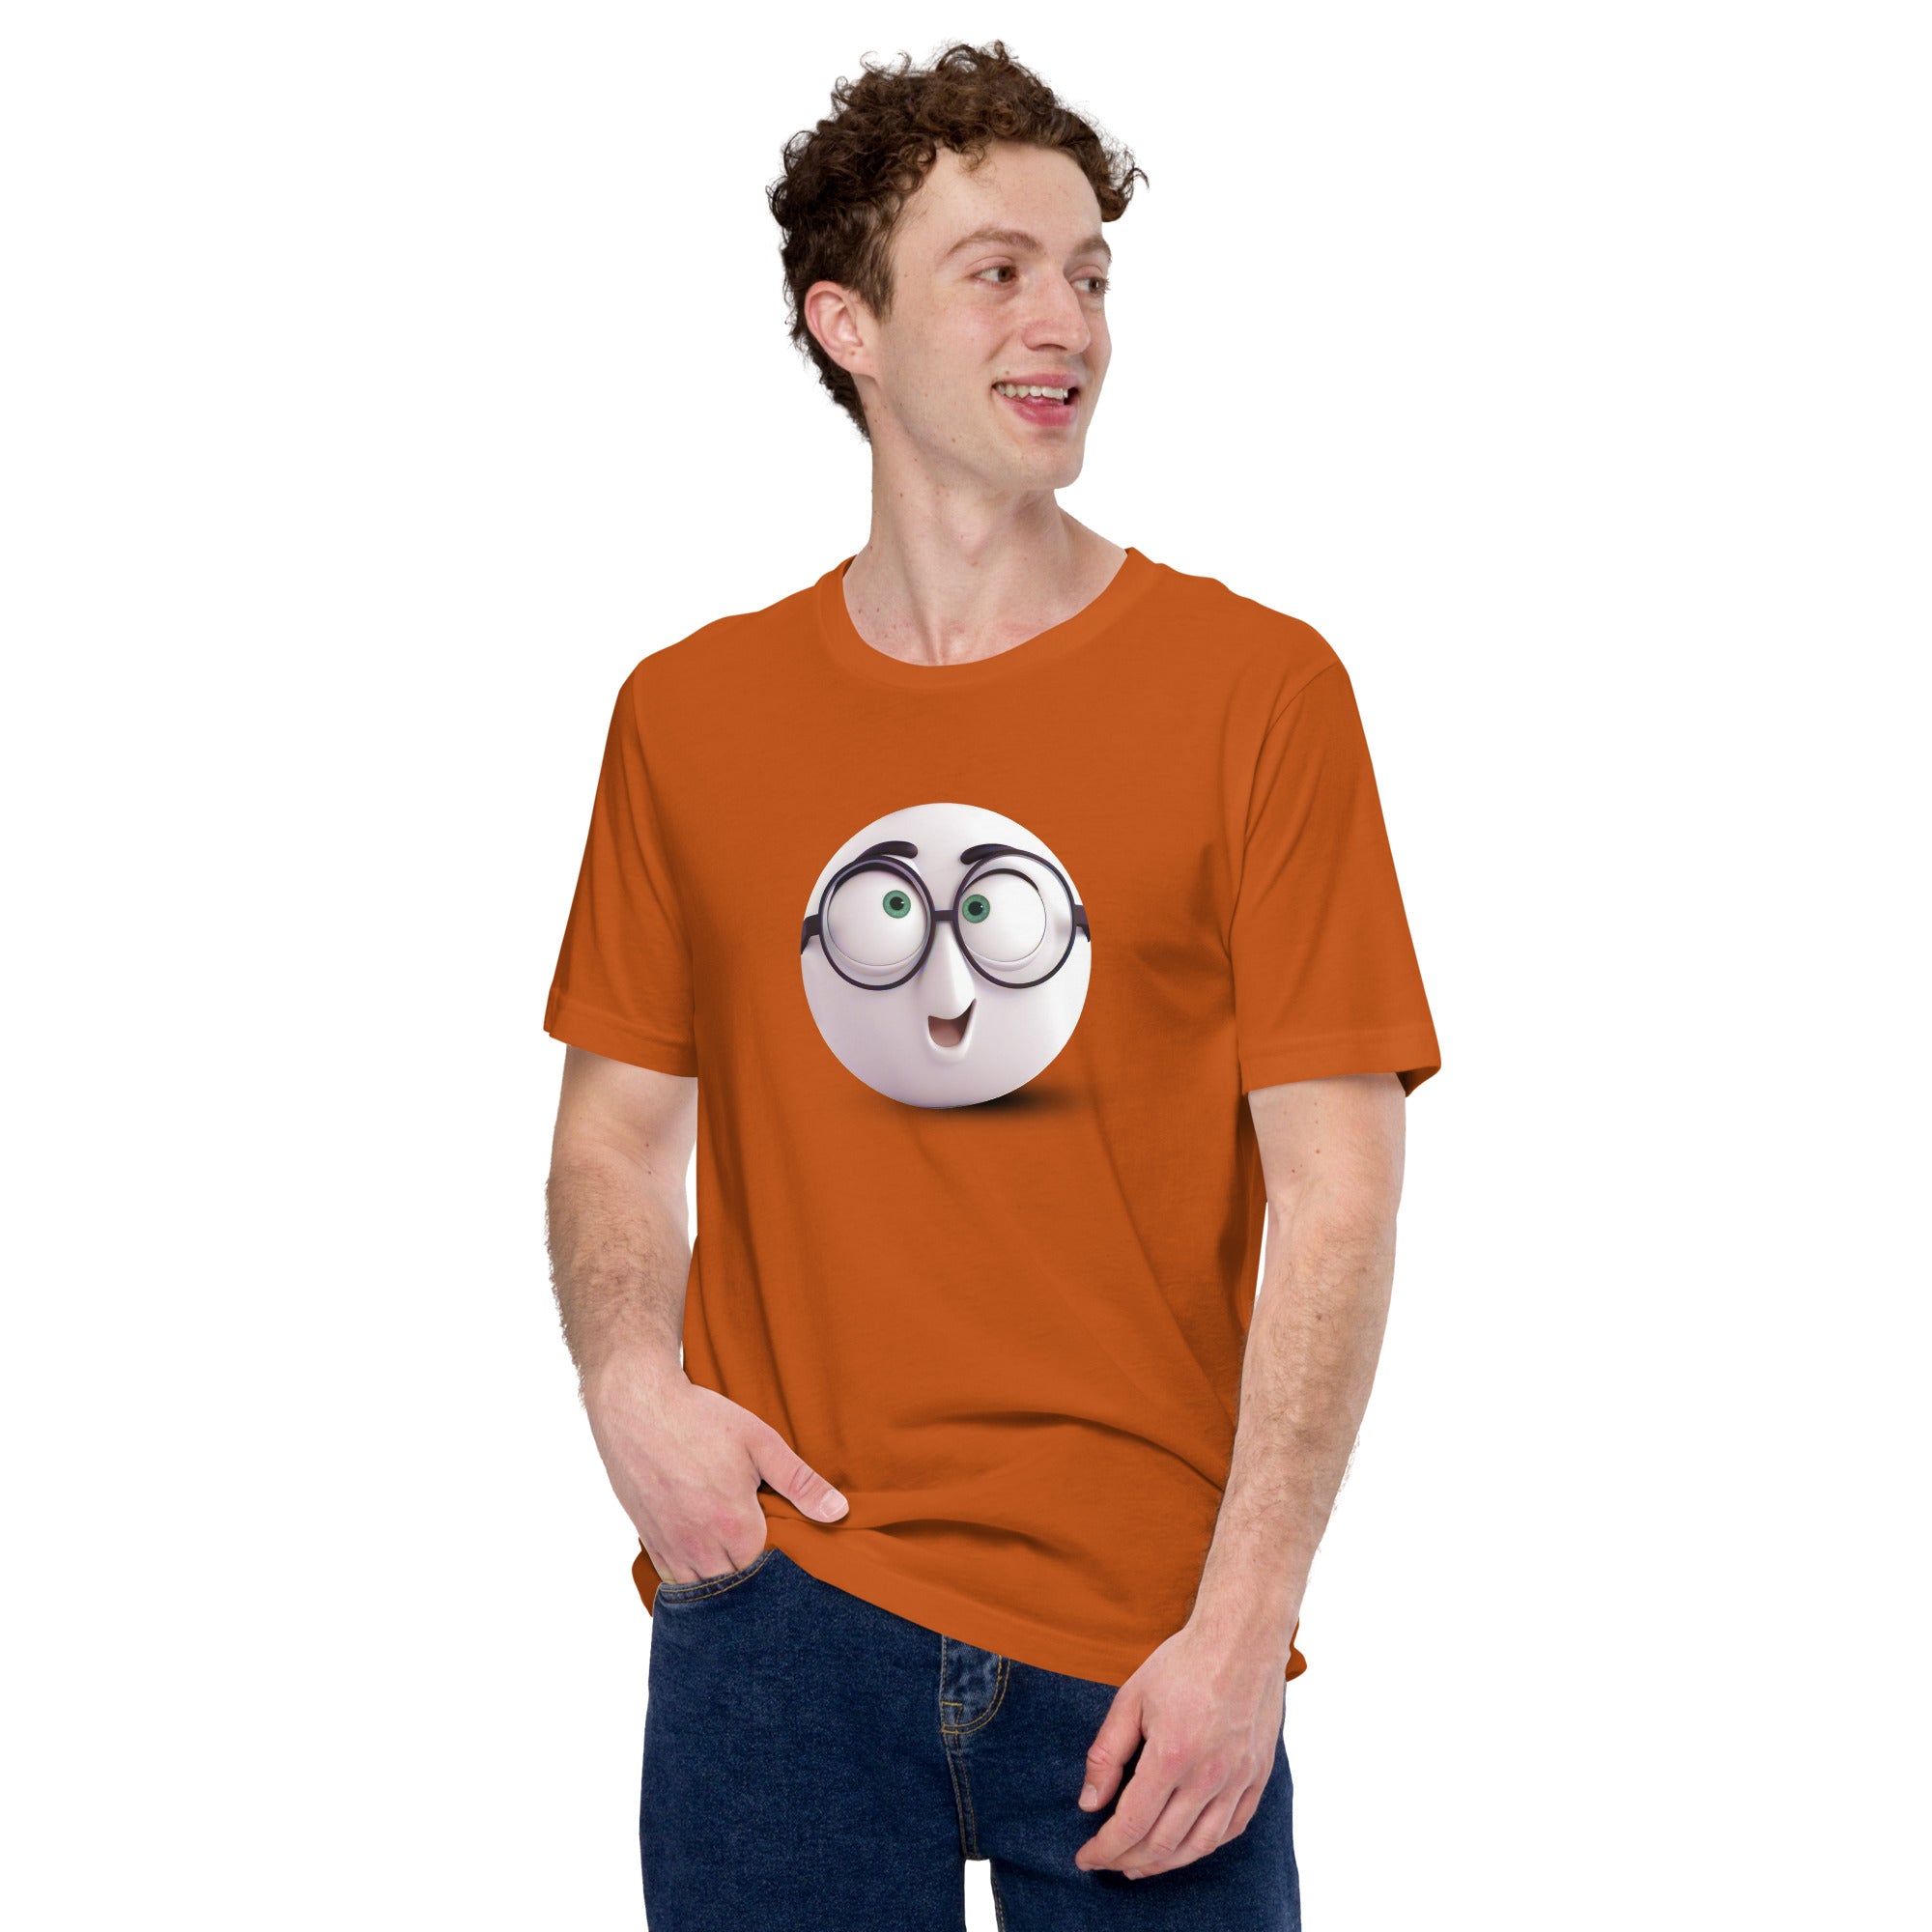 Stylish Unisex T-Shirt with Sunglasses Emoji